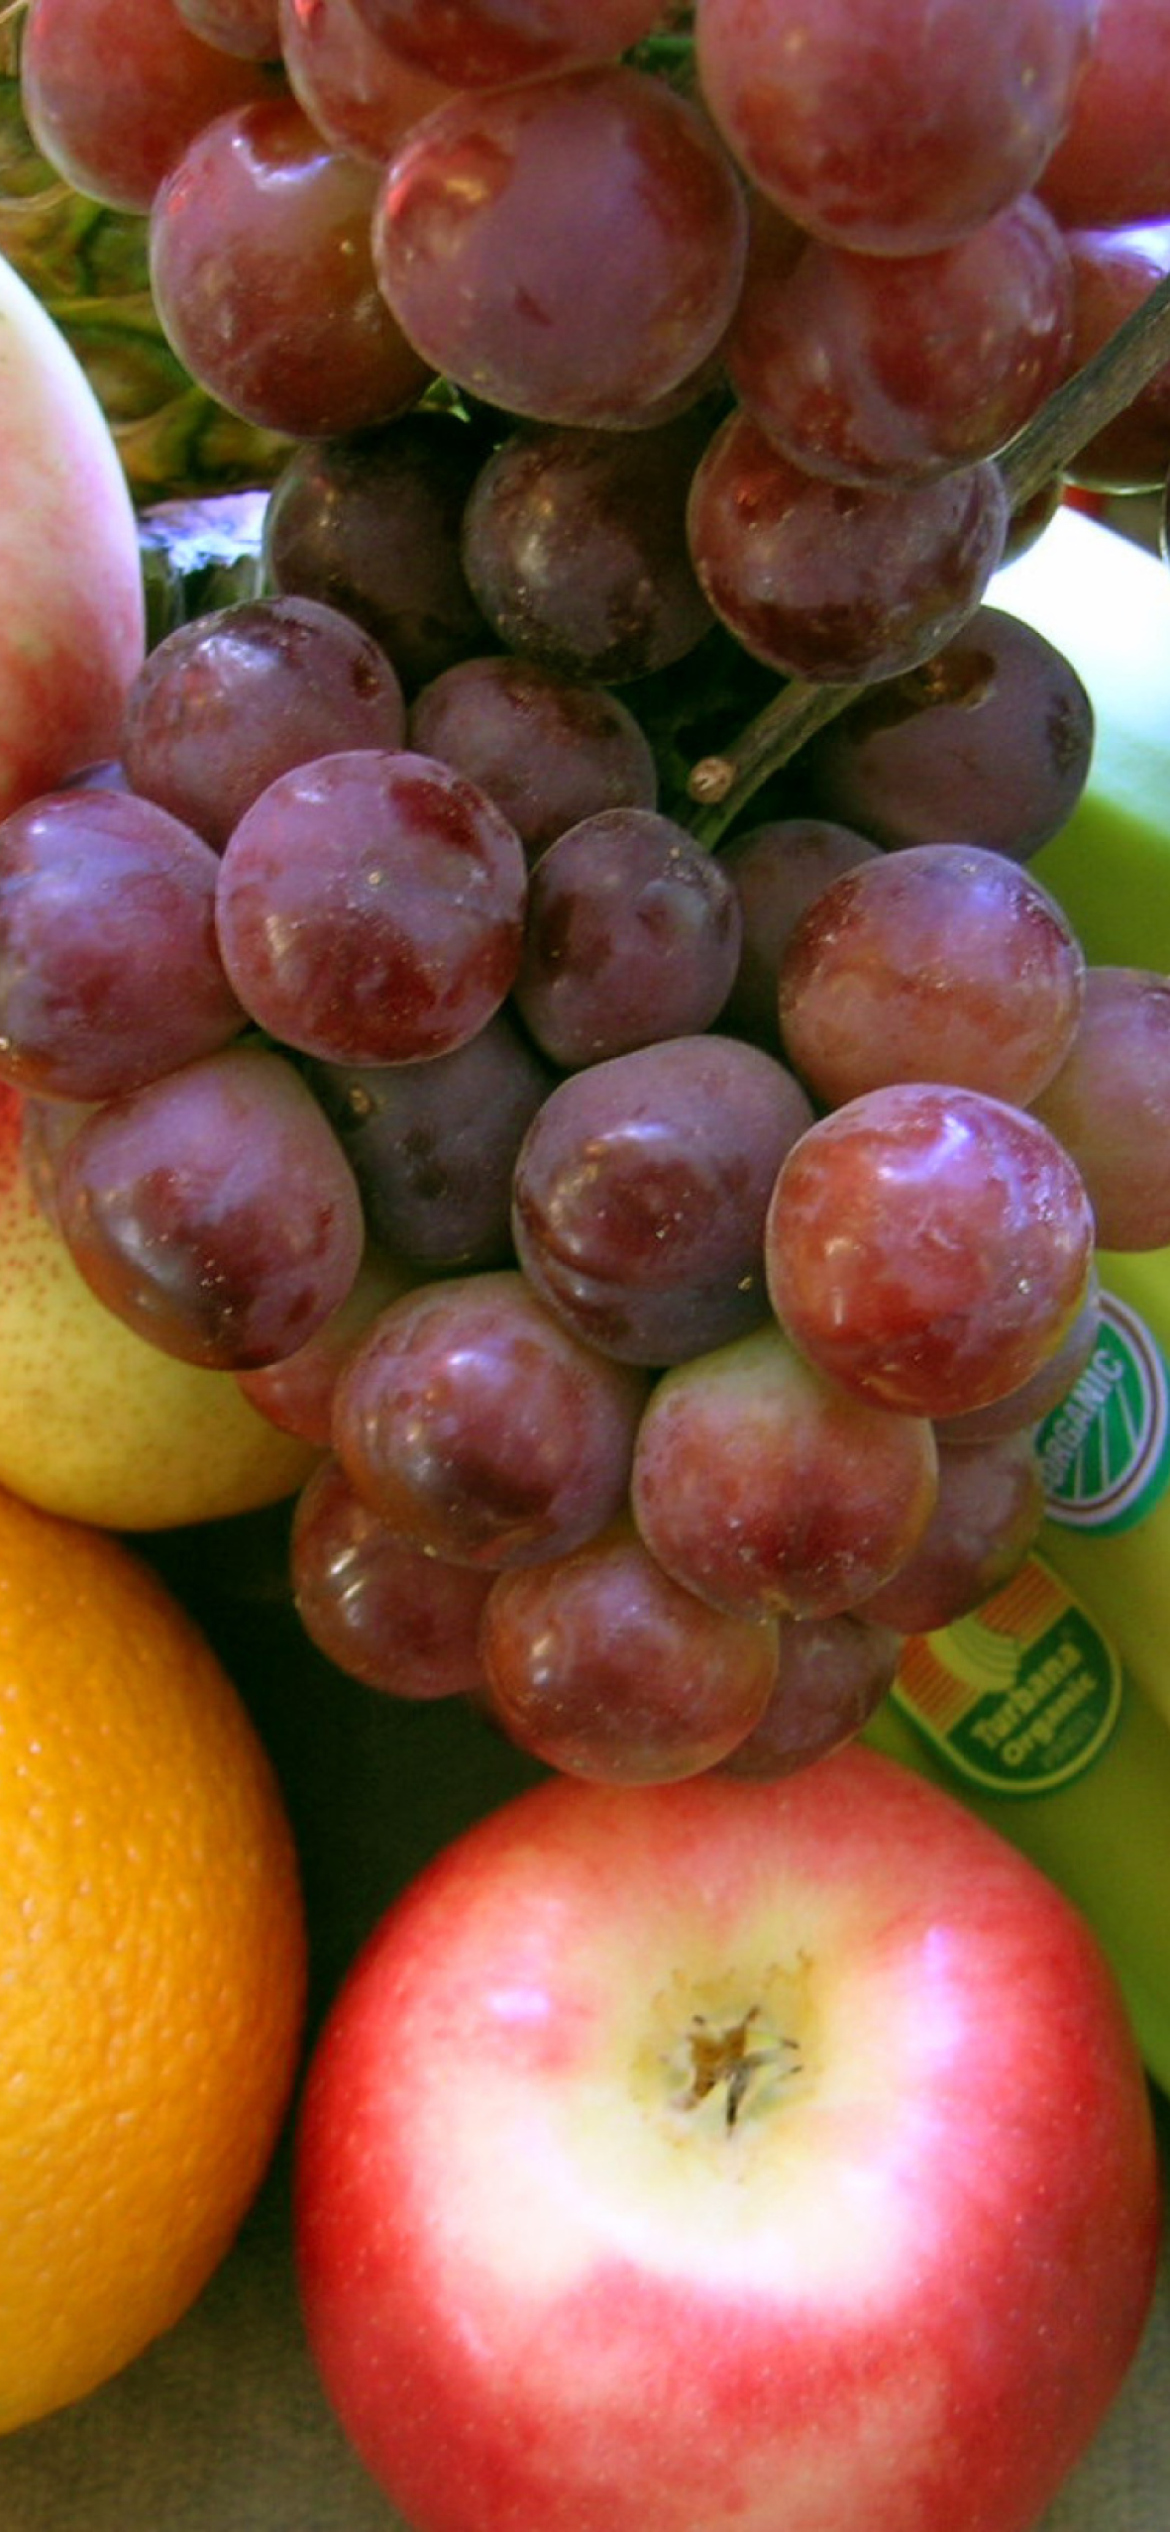 Vitamins Fruits wallpaper 1170x2532